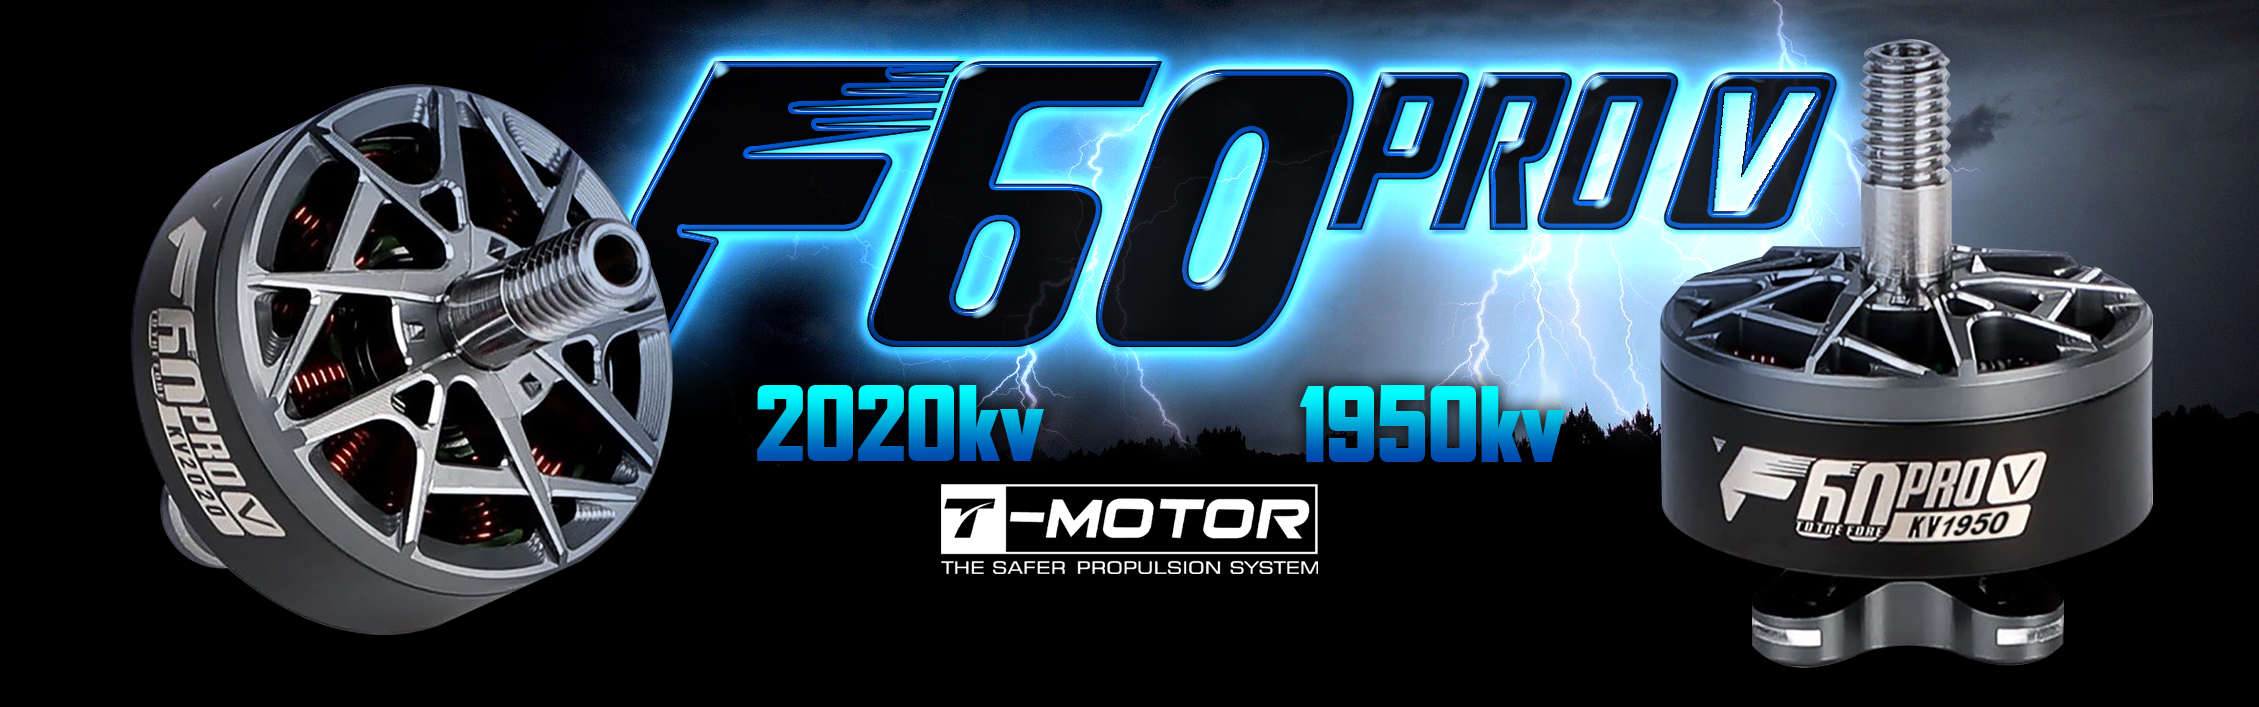 F60 PRO V 2020KV Motor By T-Motor 